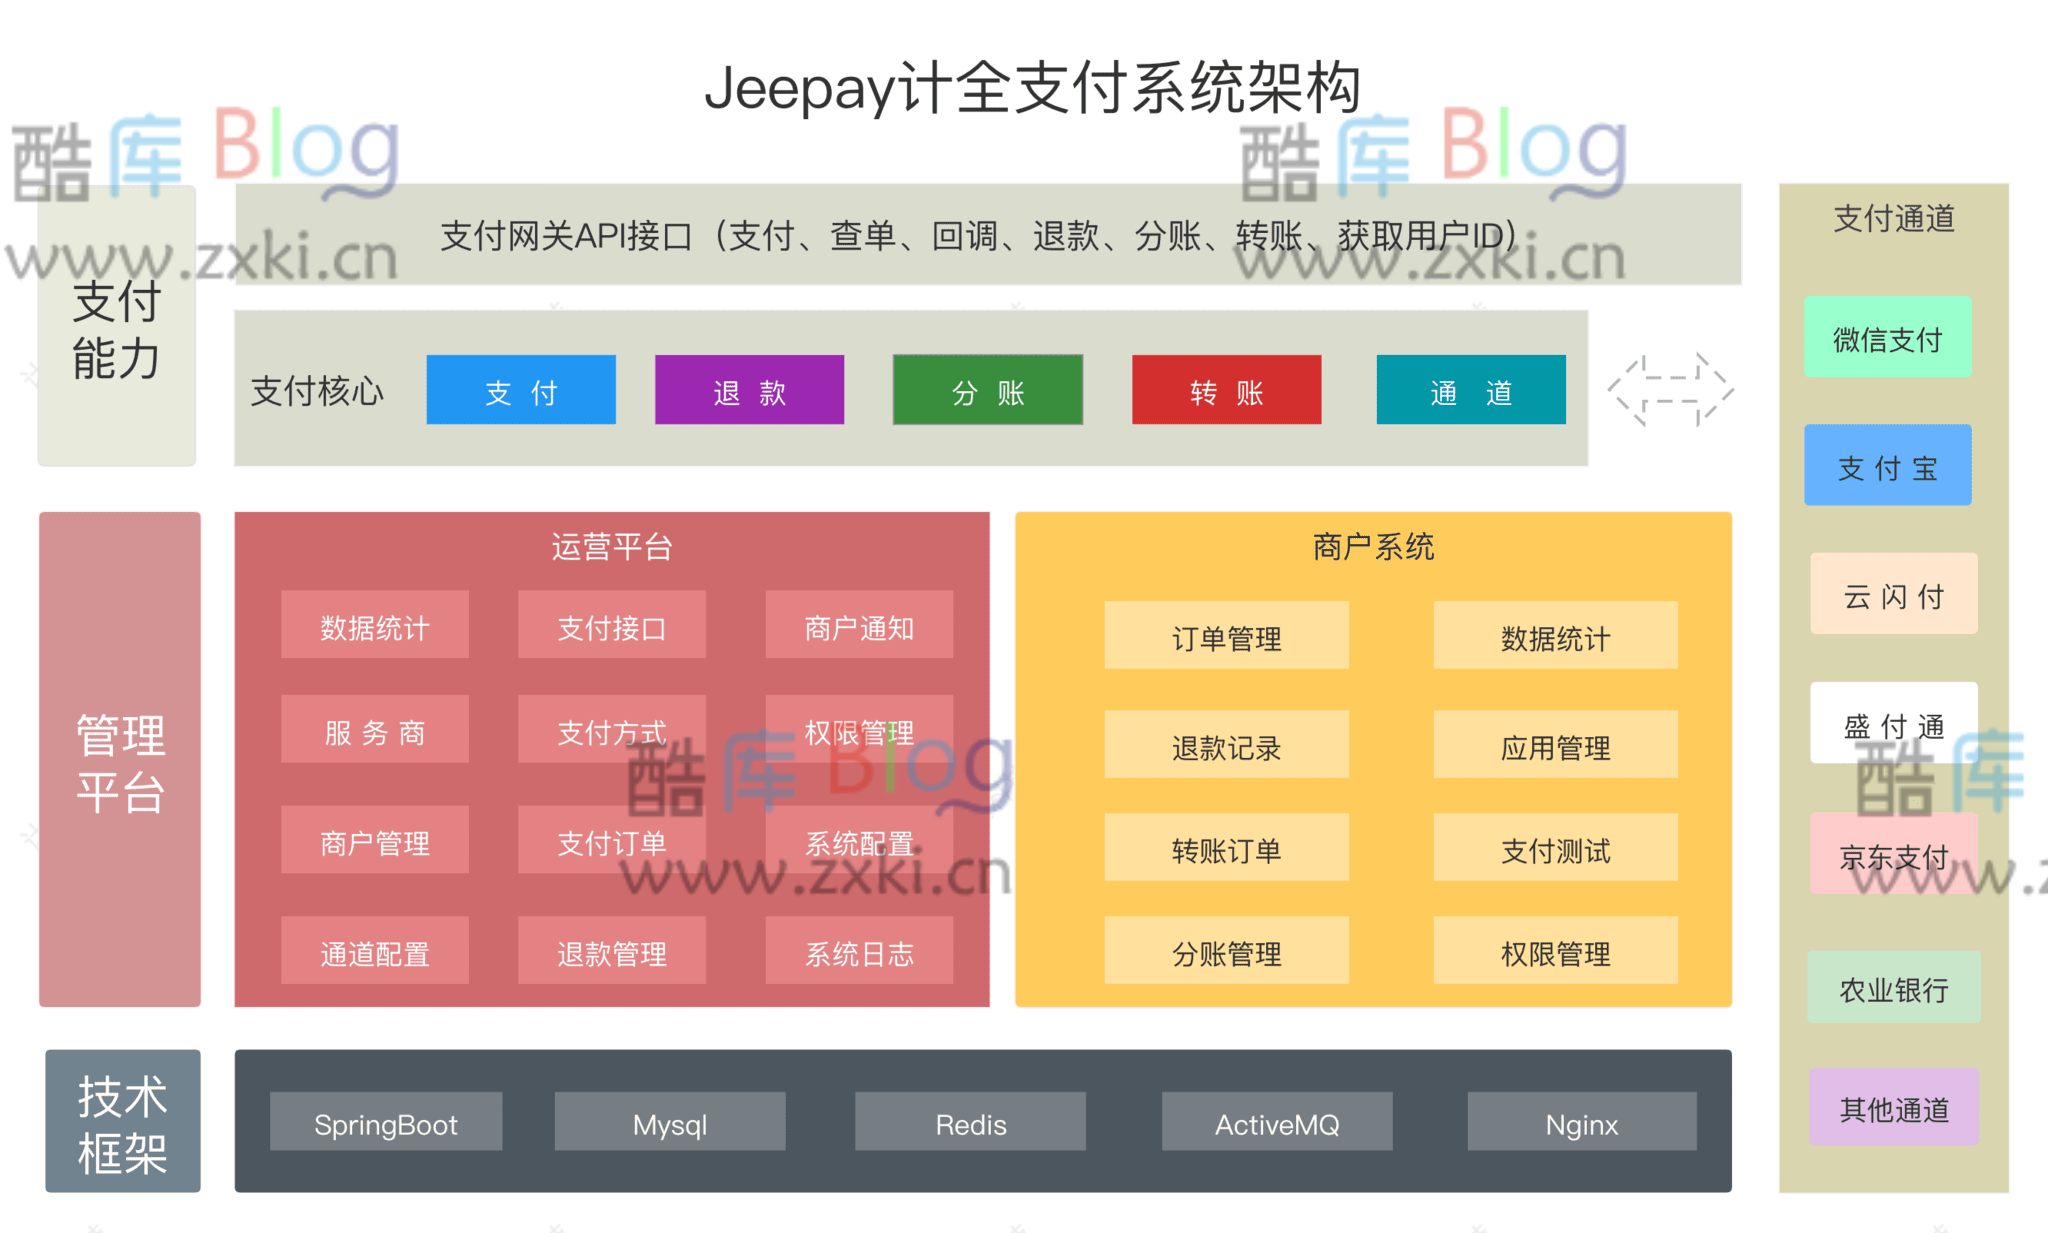 Jeepay开源支付系统/支持多渠道服务商和普通商户模式 第5张插图